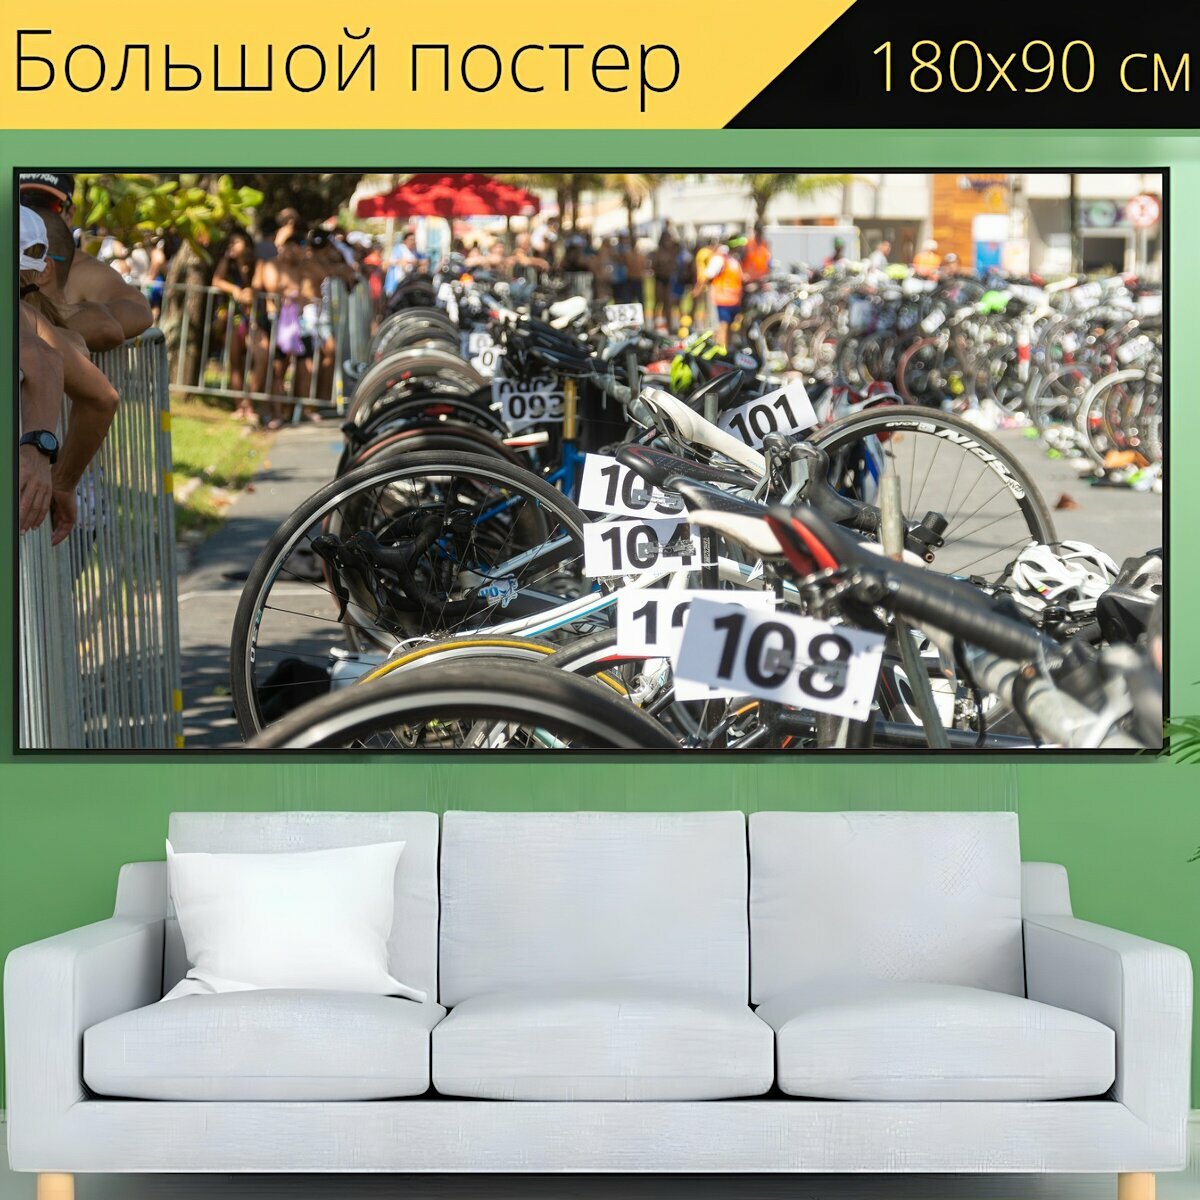 Большой постер "Велосипеды, кататься на велосипеде, триатлон" 180 x 90 см. для интерьера